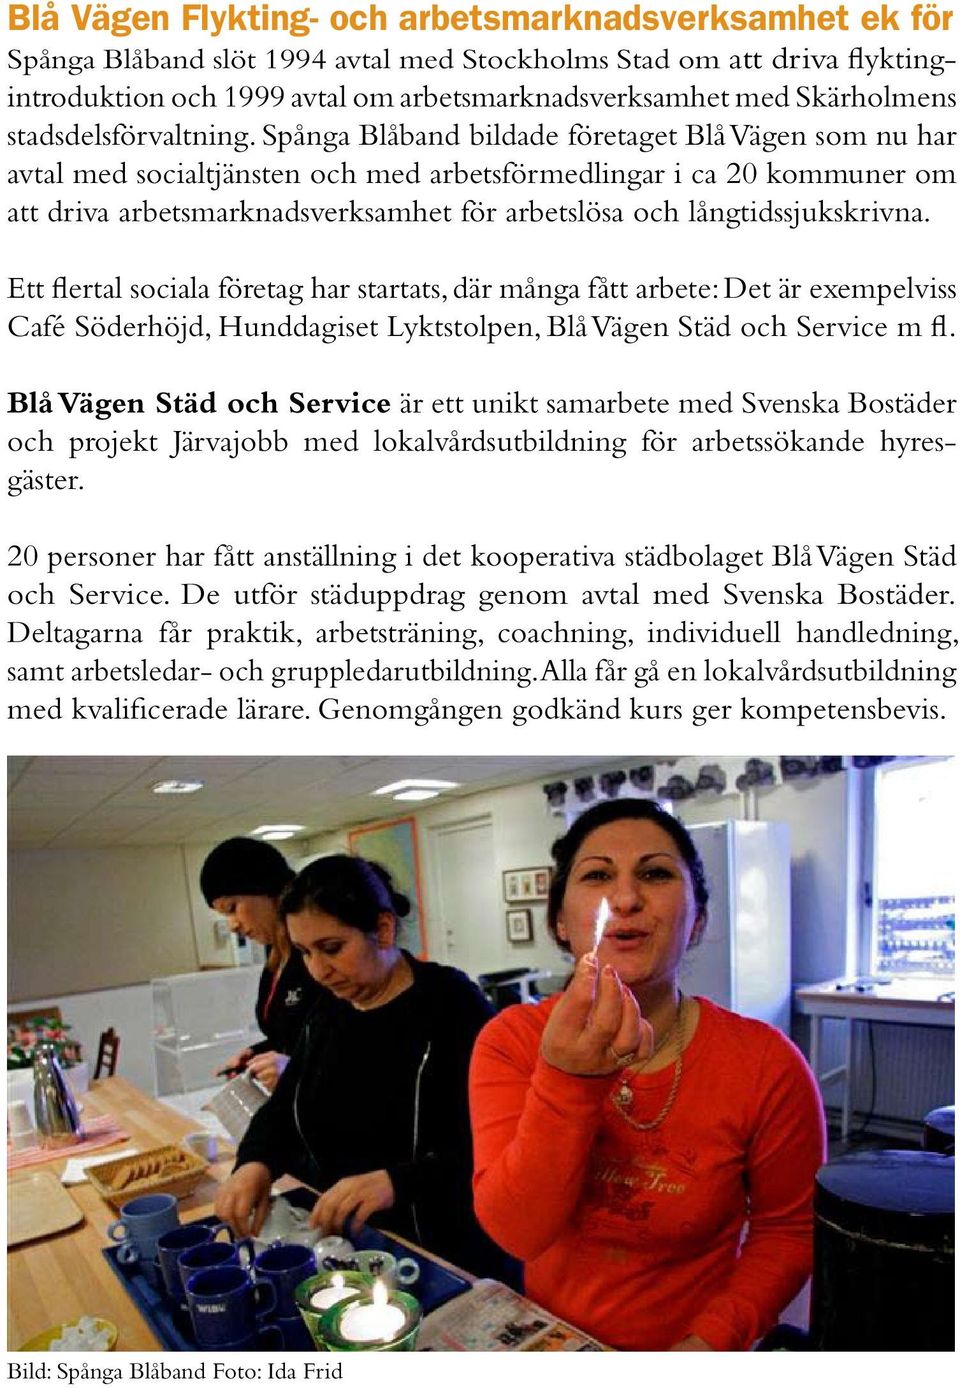 Spånga Blåband bildade företaget Blå Vägen som nu har avtal med socialtjänsten och med arbetsförmedlingar i ca 20 kommuner om att driva arbetsmarknadsverksamhet för arbetslösa och långtidssjukskrivna.